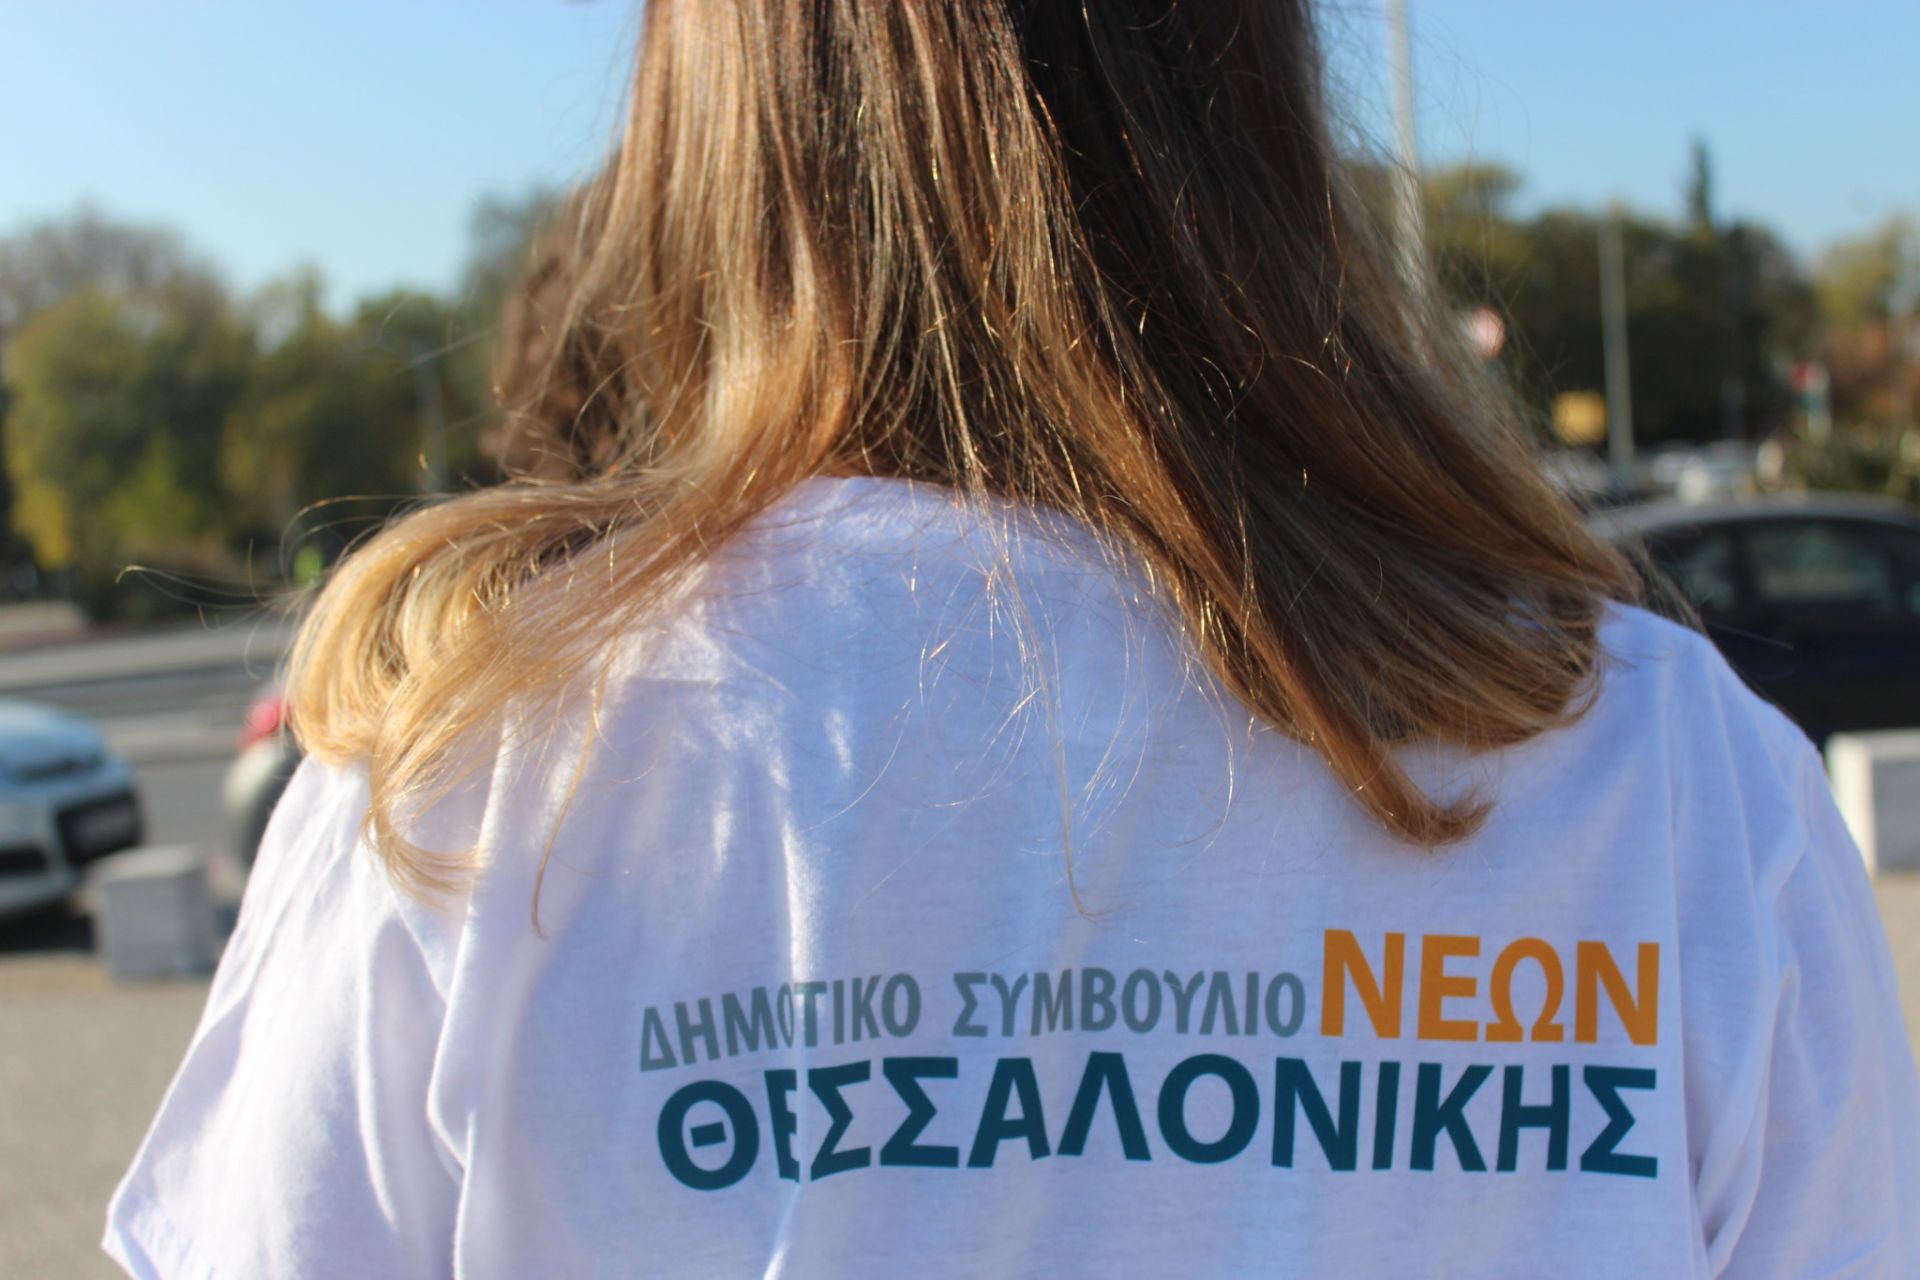 Δημοτικό Συμβούλιο Νέων Θεσσαλονίκης